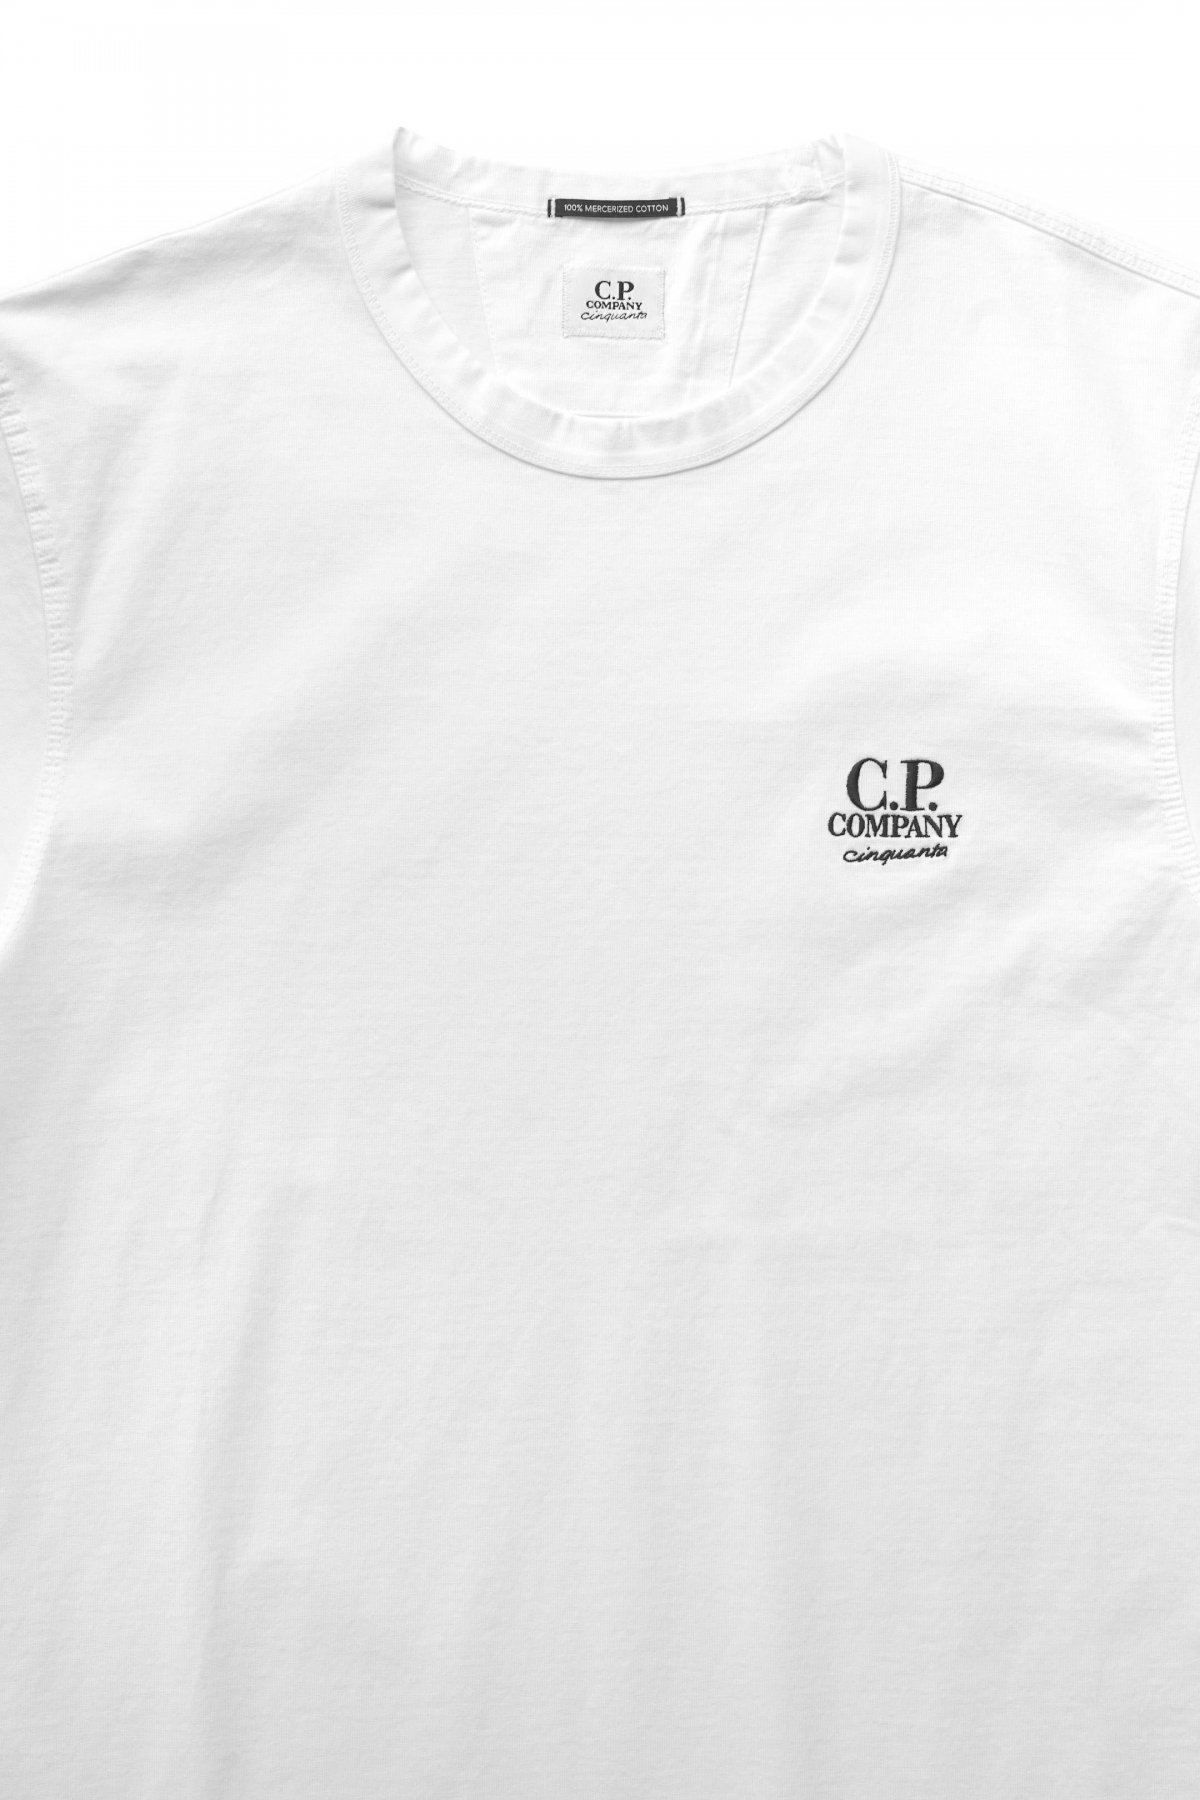 シーピーカンパニー C.P.COMPANY ロングTシャツ ベージュ M ...